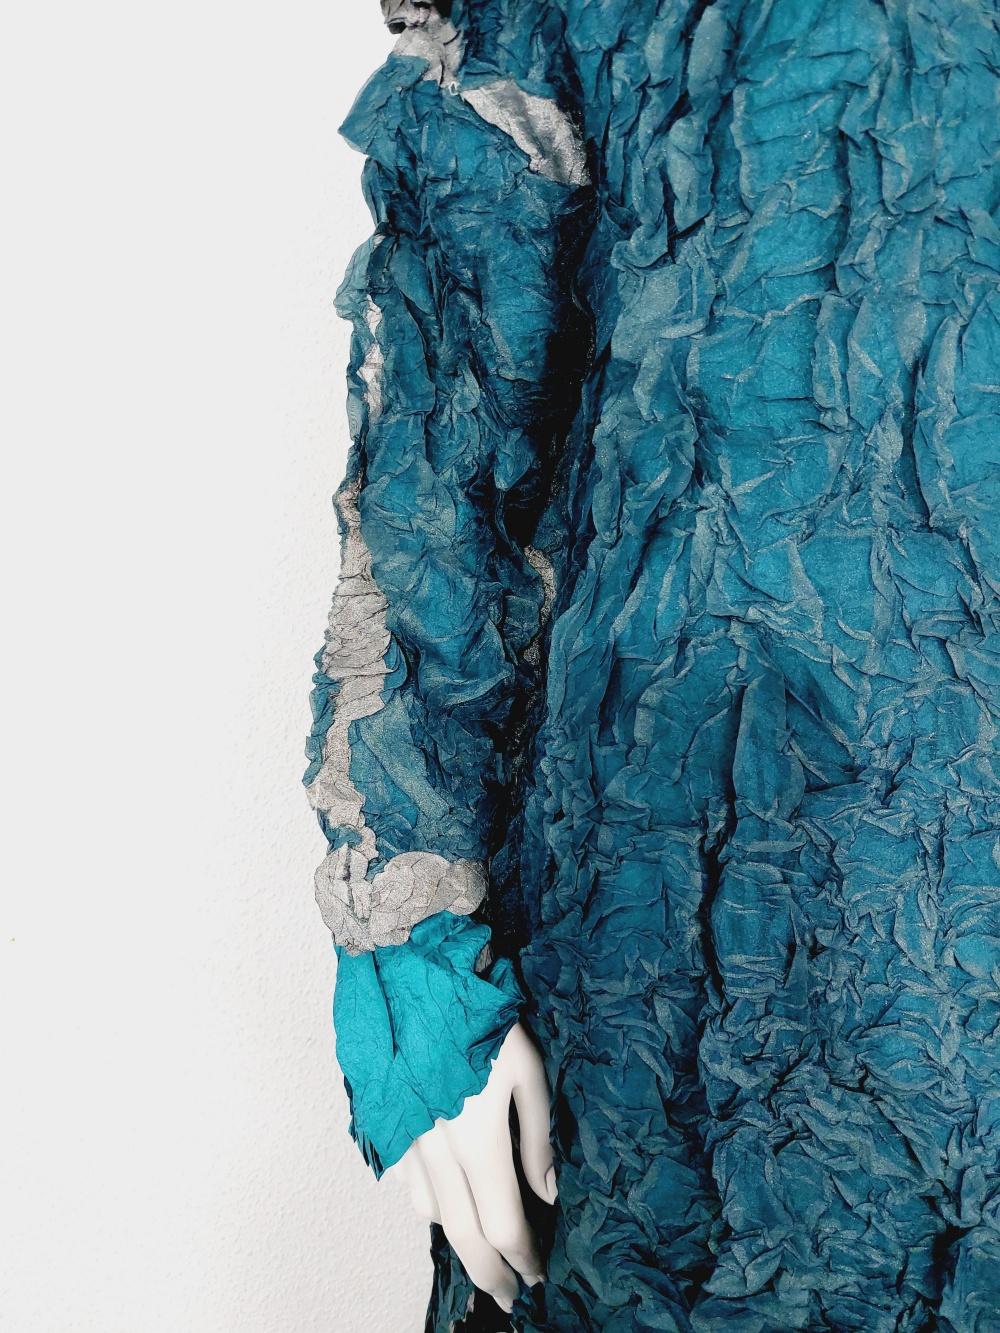 Issey Miyake Metallic Blue Wrinkled Runway Japanese Pleats Please Dress Gown 3